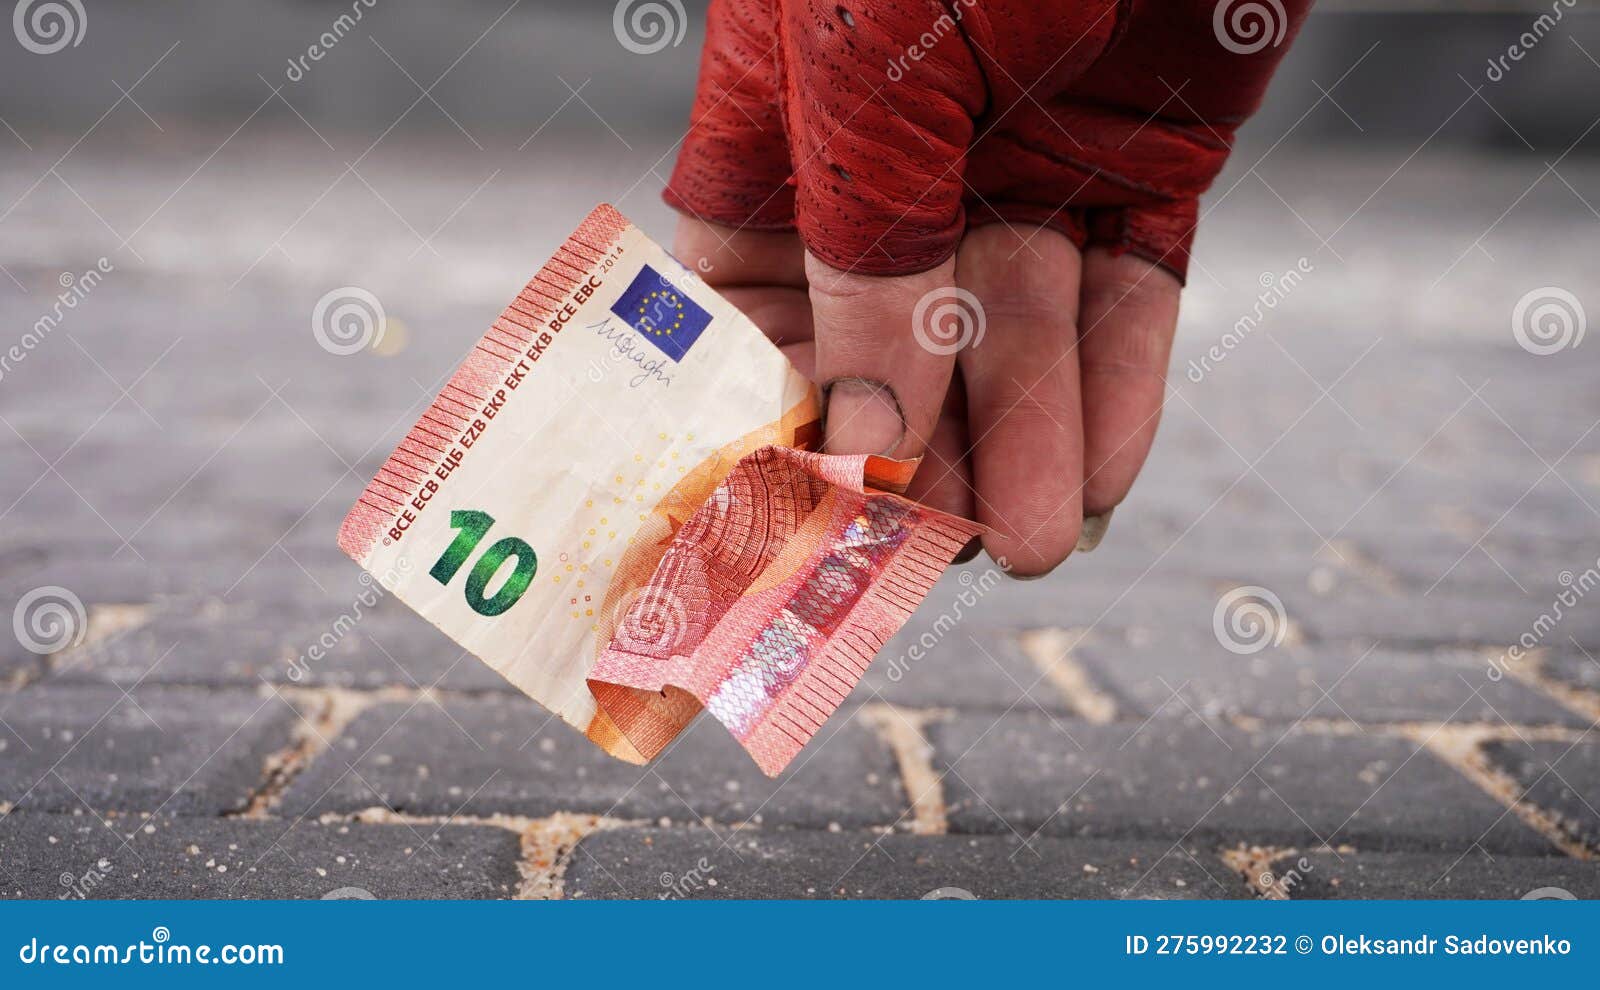 la mano de tramp con un guante rojo levanta un billete de diez euros